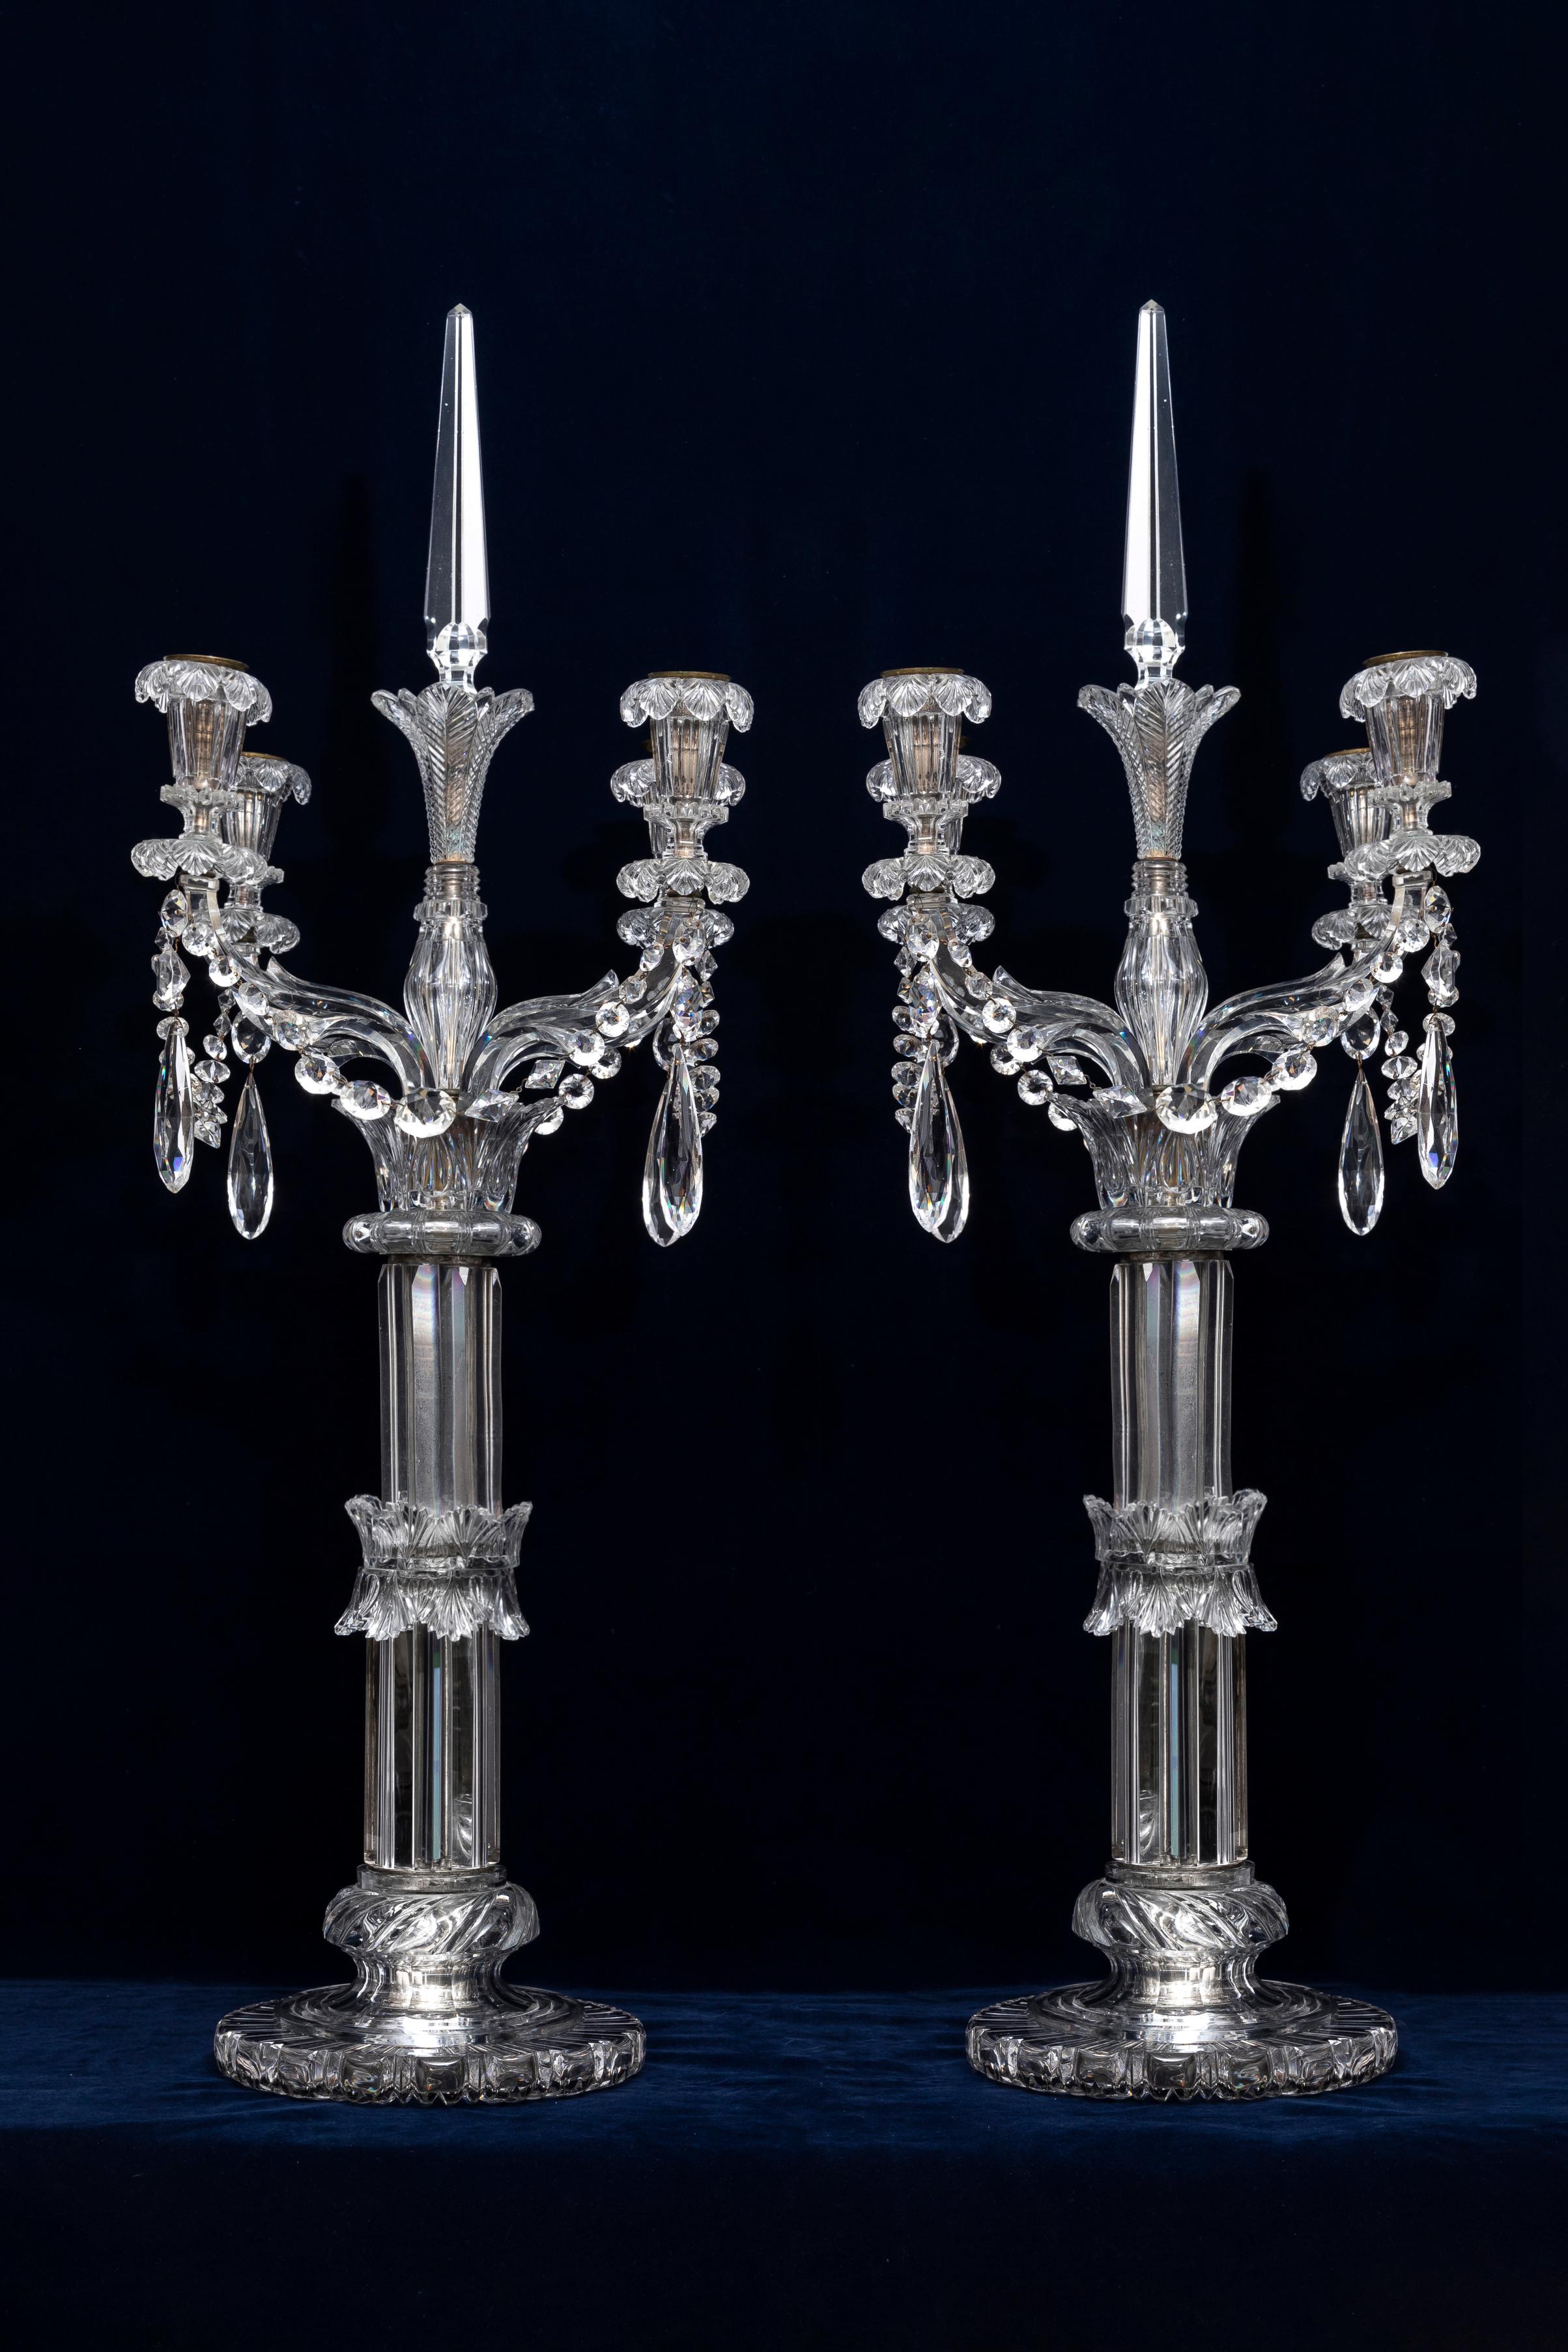 Paire de torchères/candélabres monumentaux en cristal Osler à quatre lumières du XIXe siècle, de la taille d'un palais.  Chaque section est très finement sculptée et taillée à la main dans le cristal le plus fin et le plus dense de l'époque.  Chaque